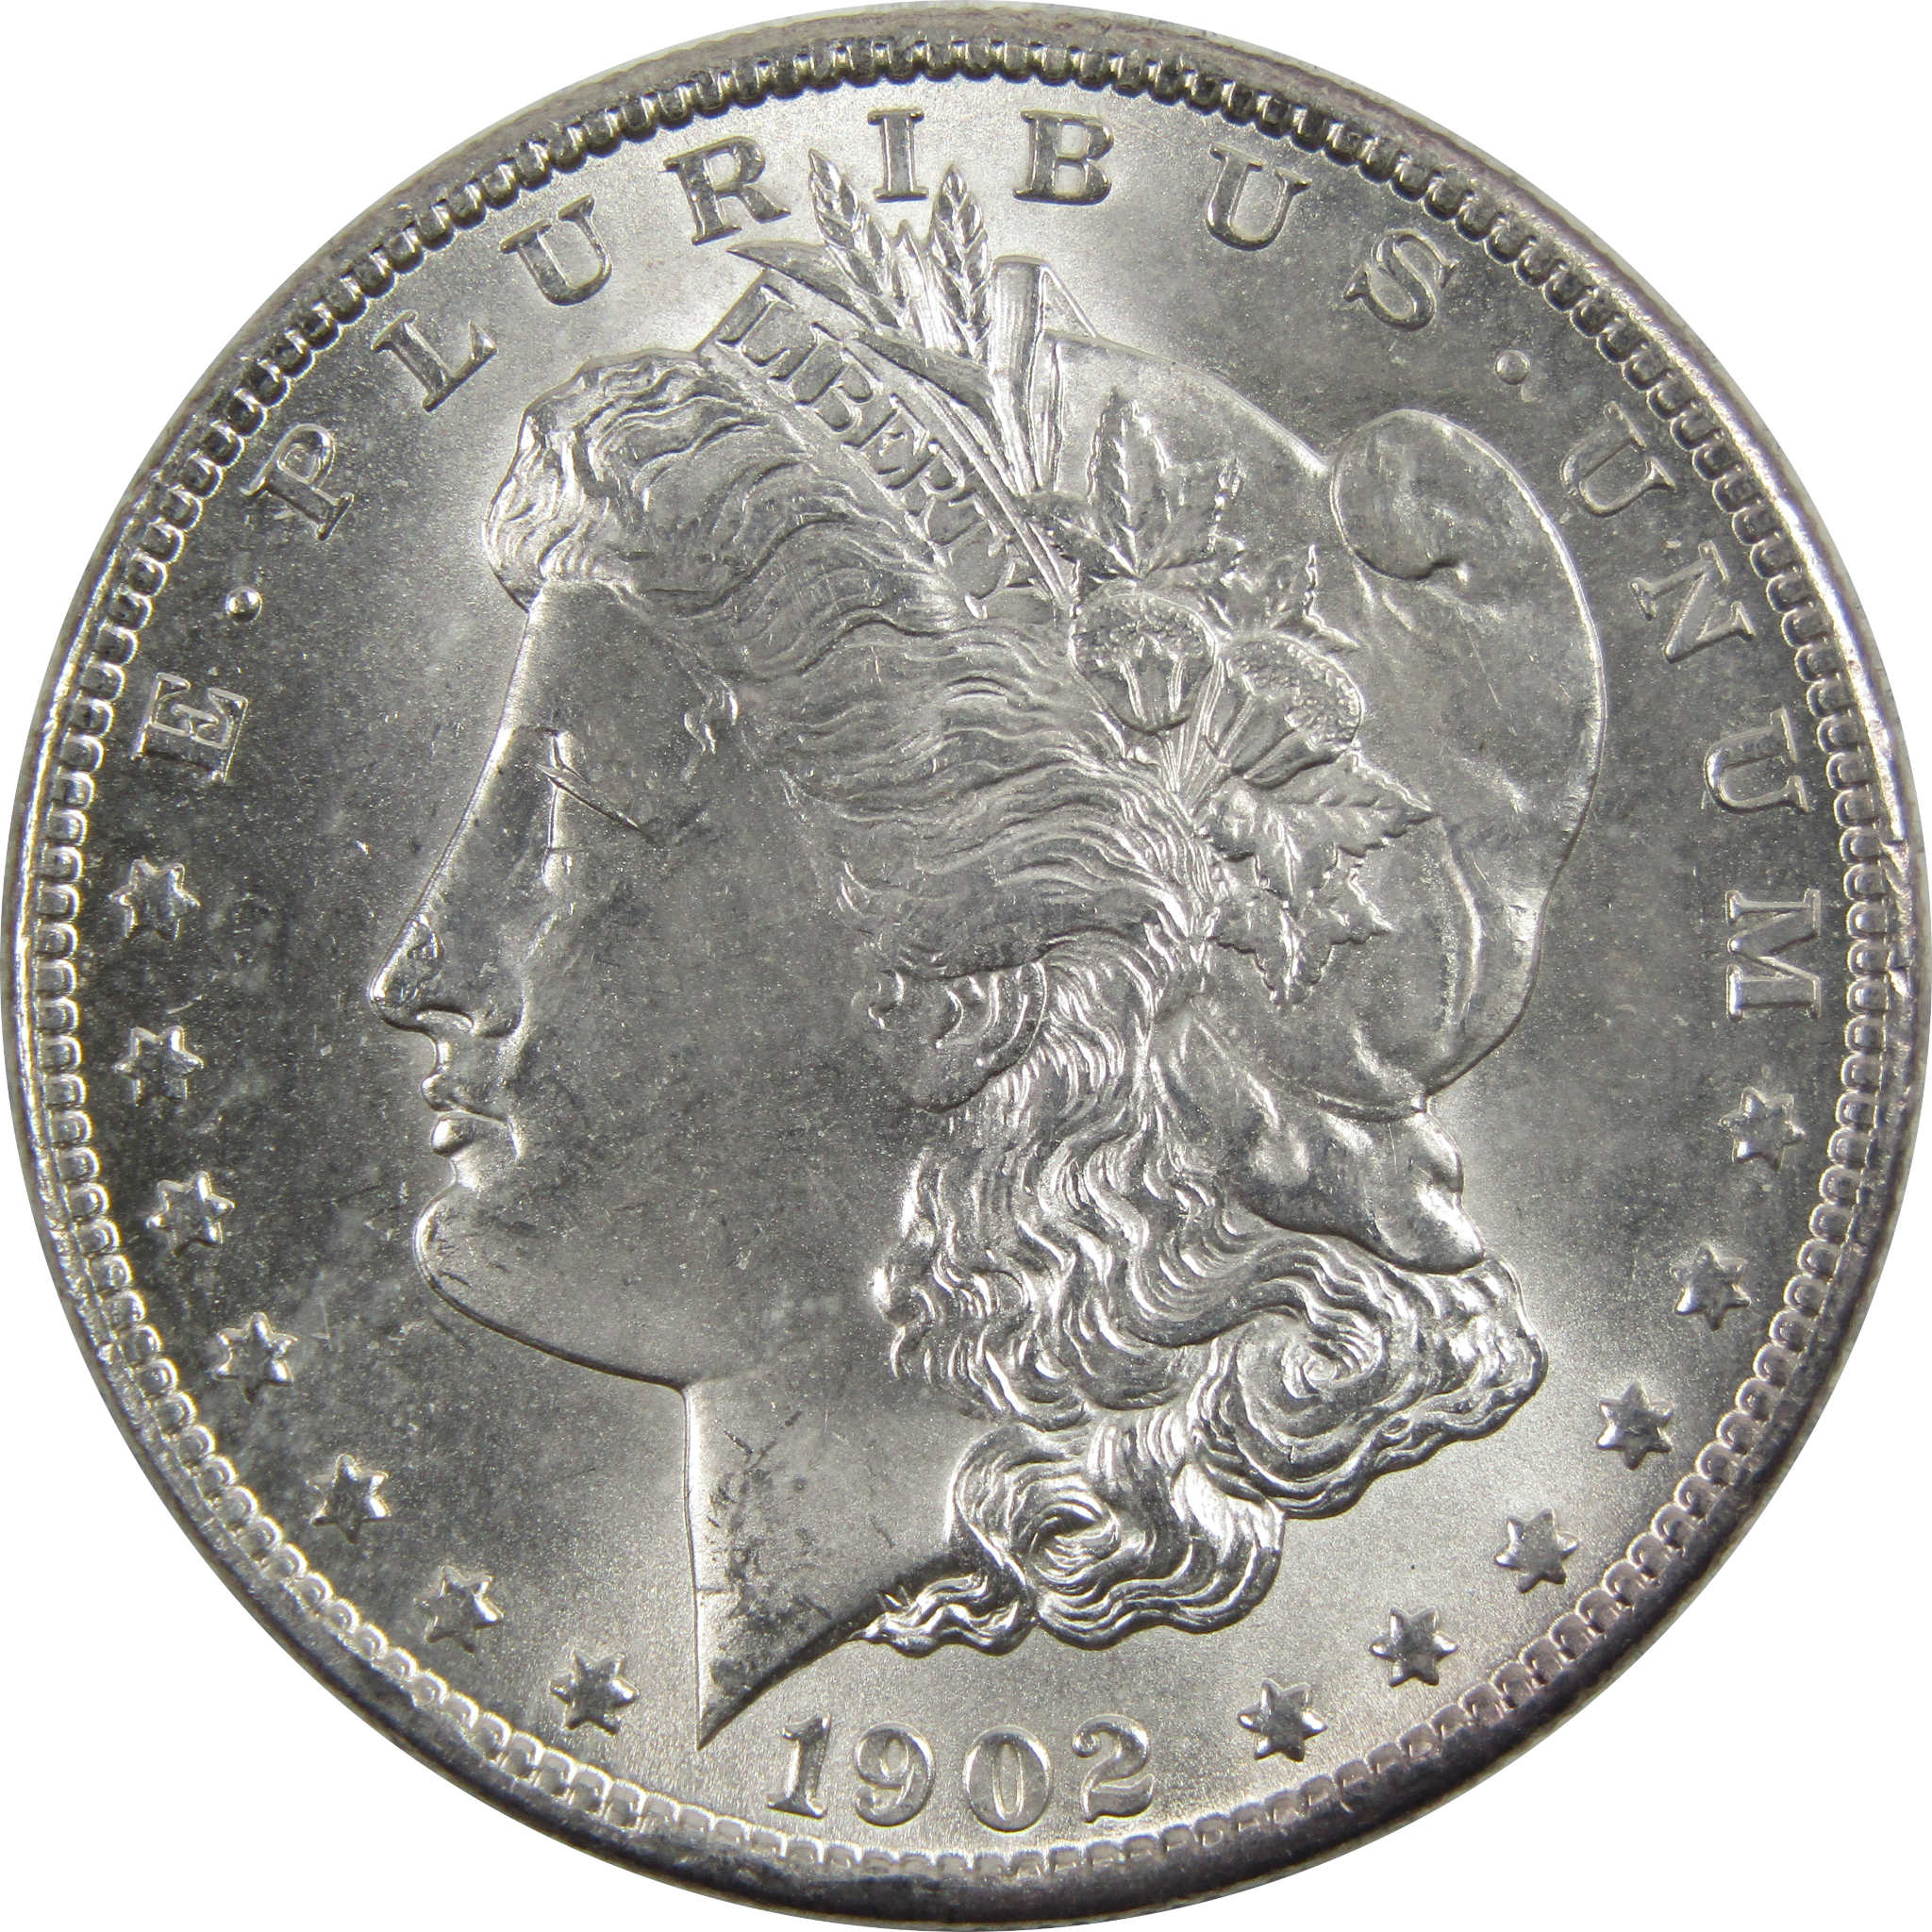 1902 O Morgan Dollar BU Uncirculated 90% Silver $1 Coin SKU:I5245 - Morgan coin - Morgan silver dollar - Morgan silver dollar for sale - Profile Coins &amp; Collectibles